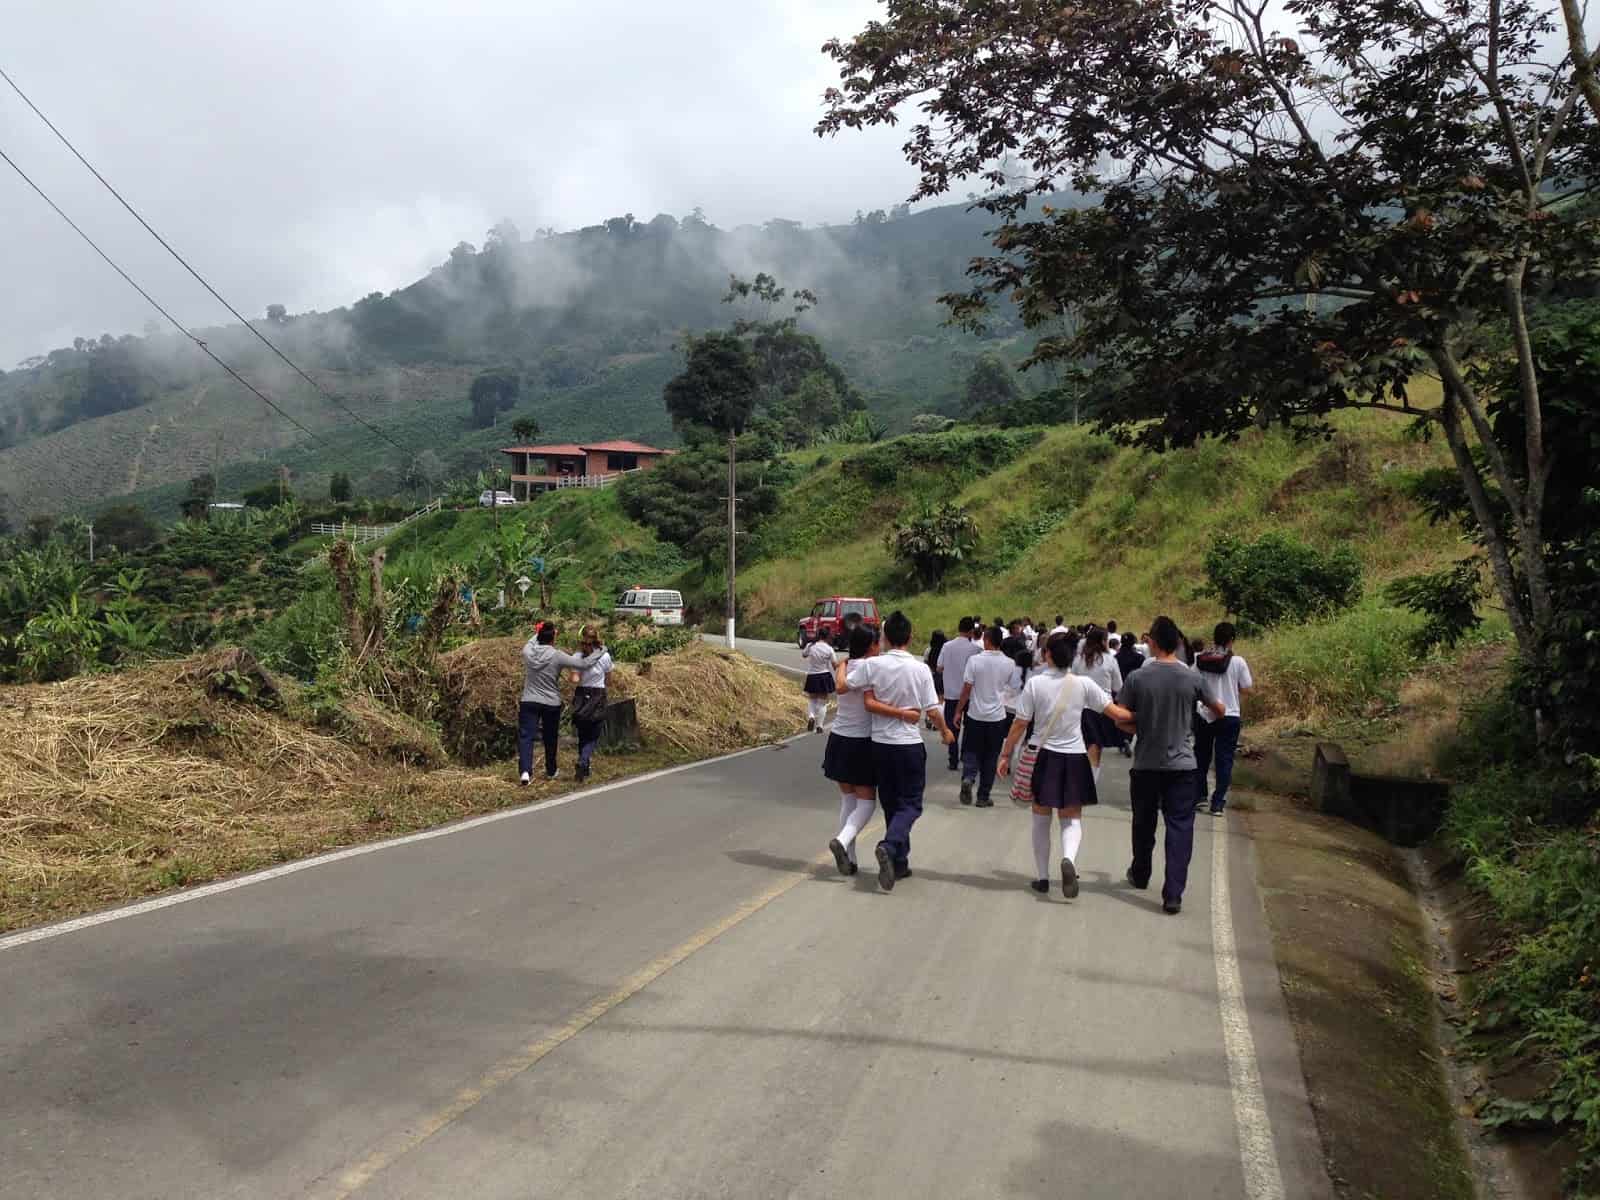 Derecho a la Vida walk from Taparcal to Belén de Umbría, Risaralda, Colombia